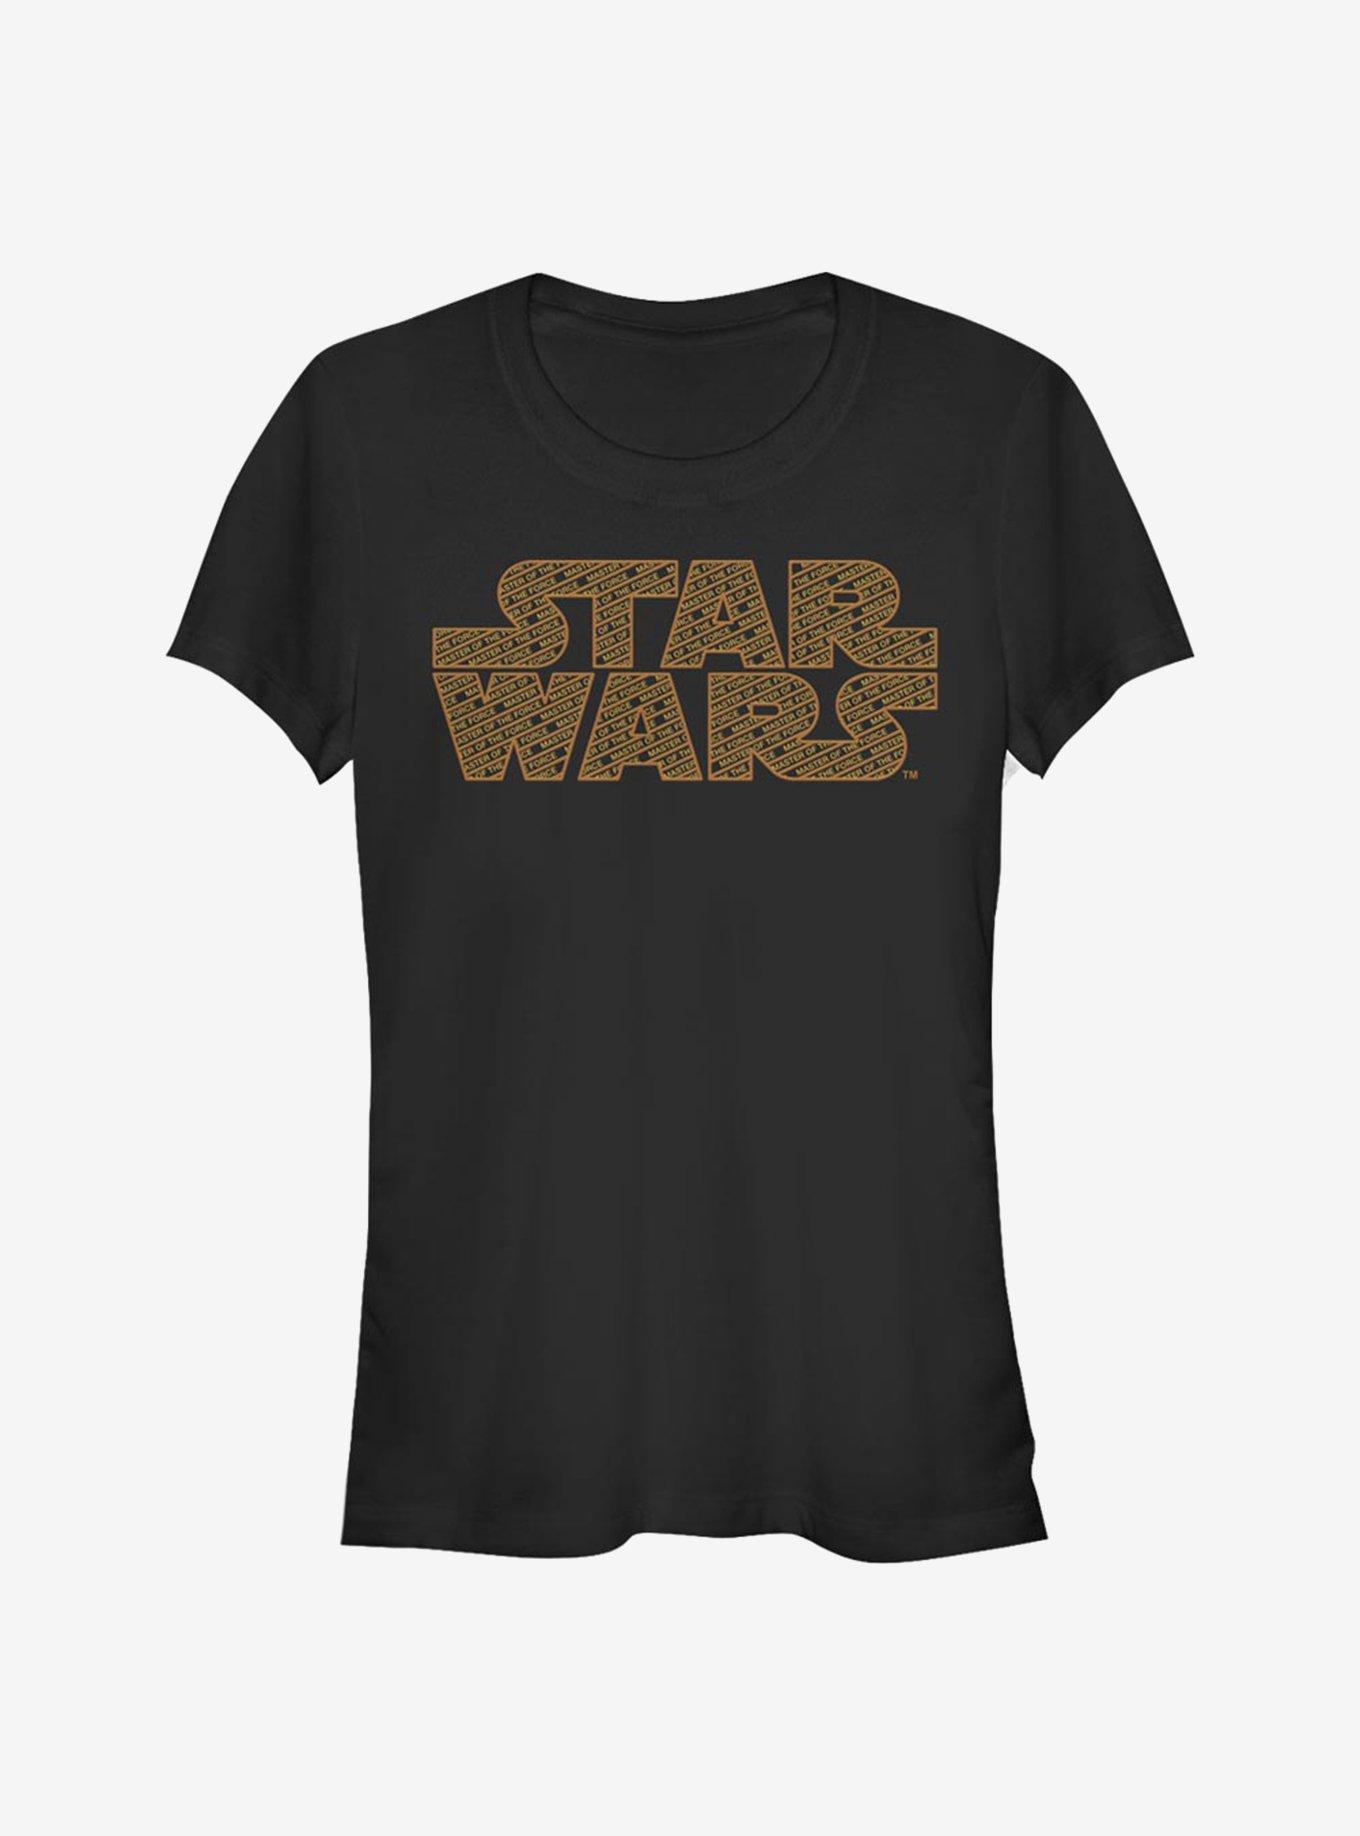 Star Wars Force Filled Logo Girls T-Shirt, BLACK, hi-res